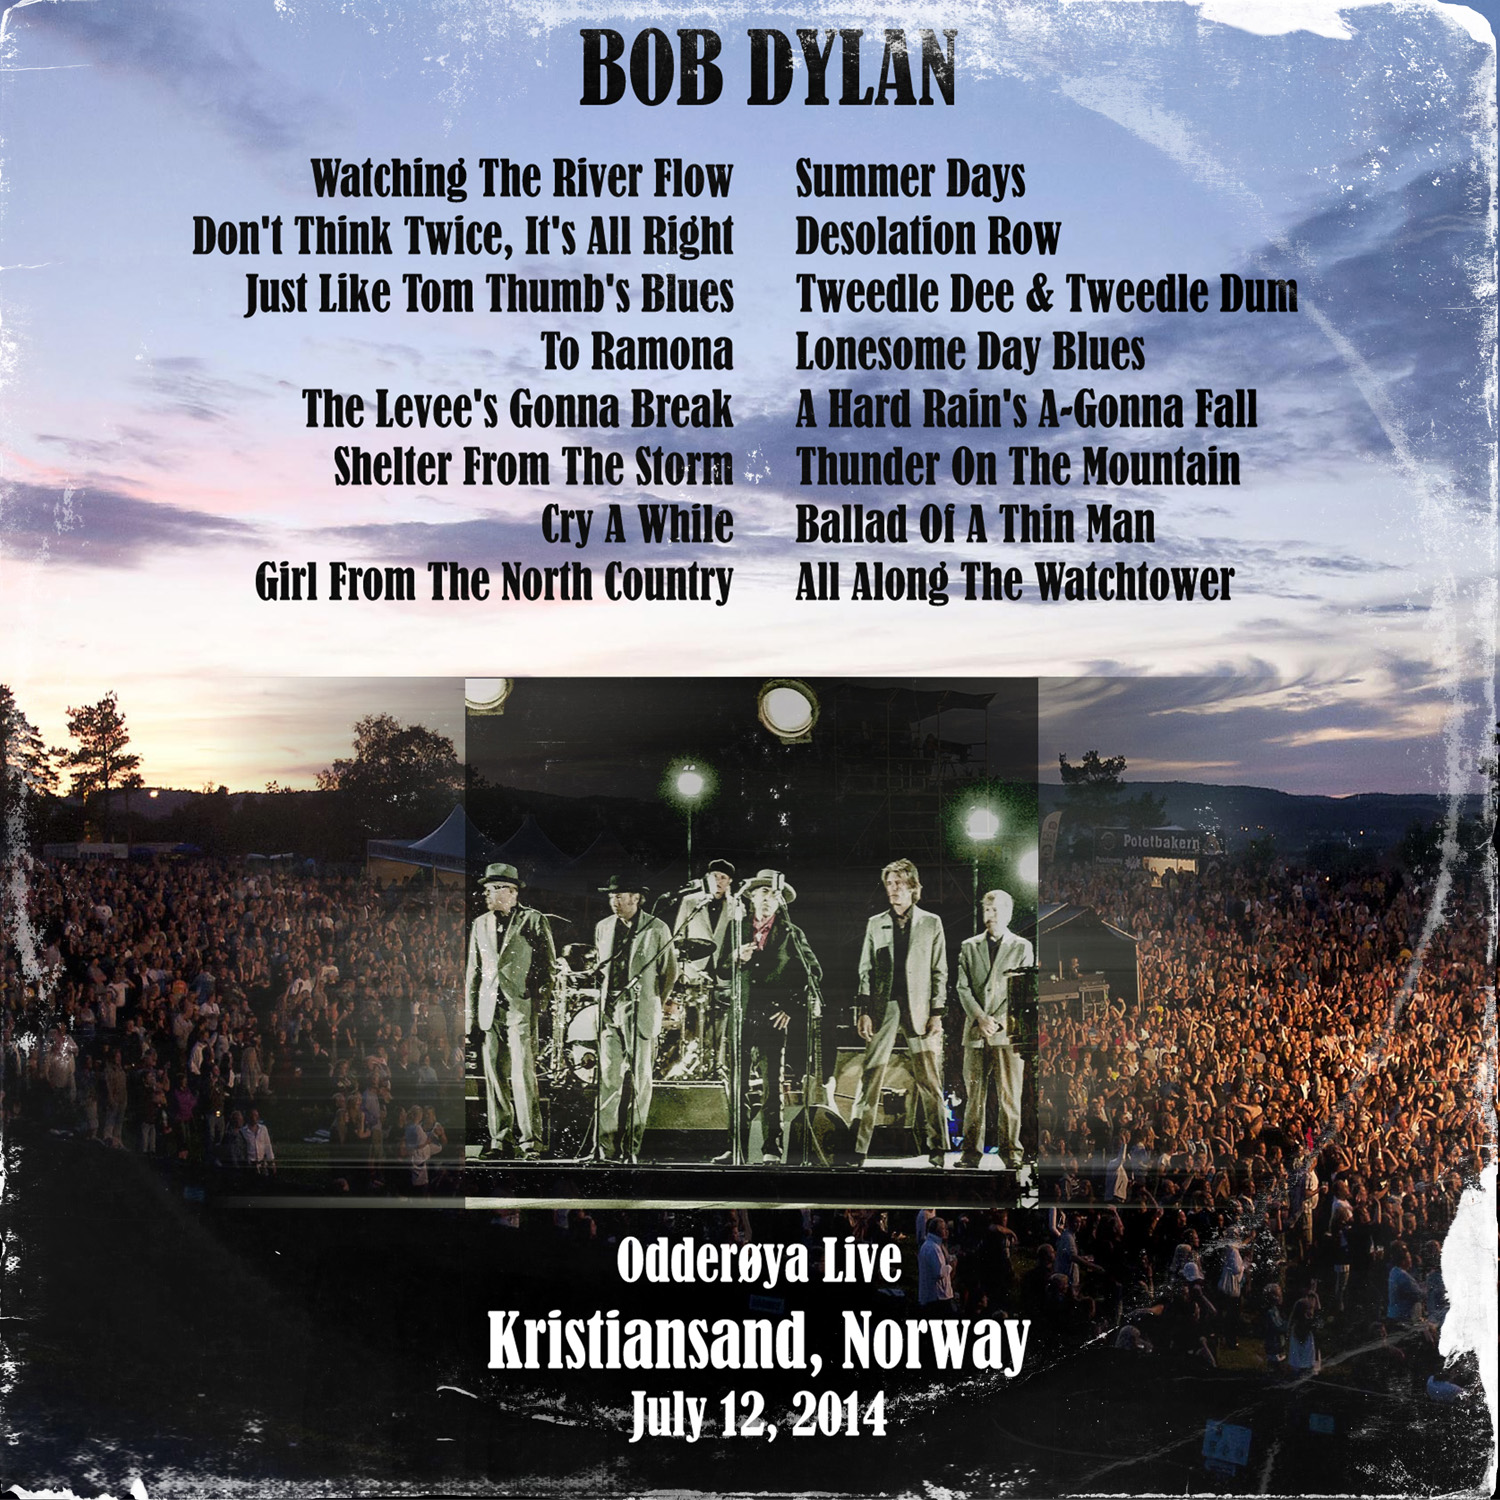 BobDylan2014-07-12Odderoya LiveKristiansandNorway (1).jpg